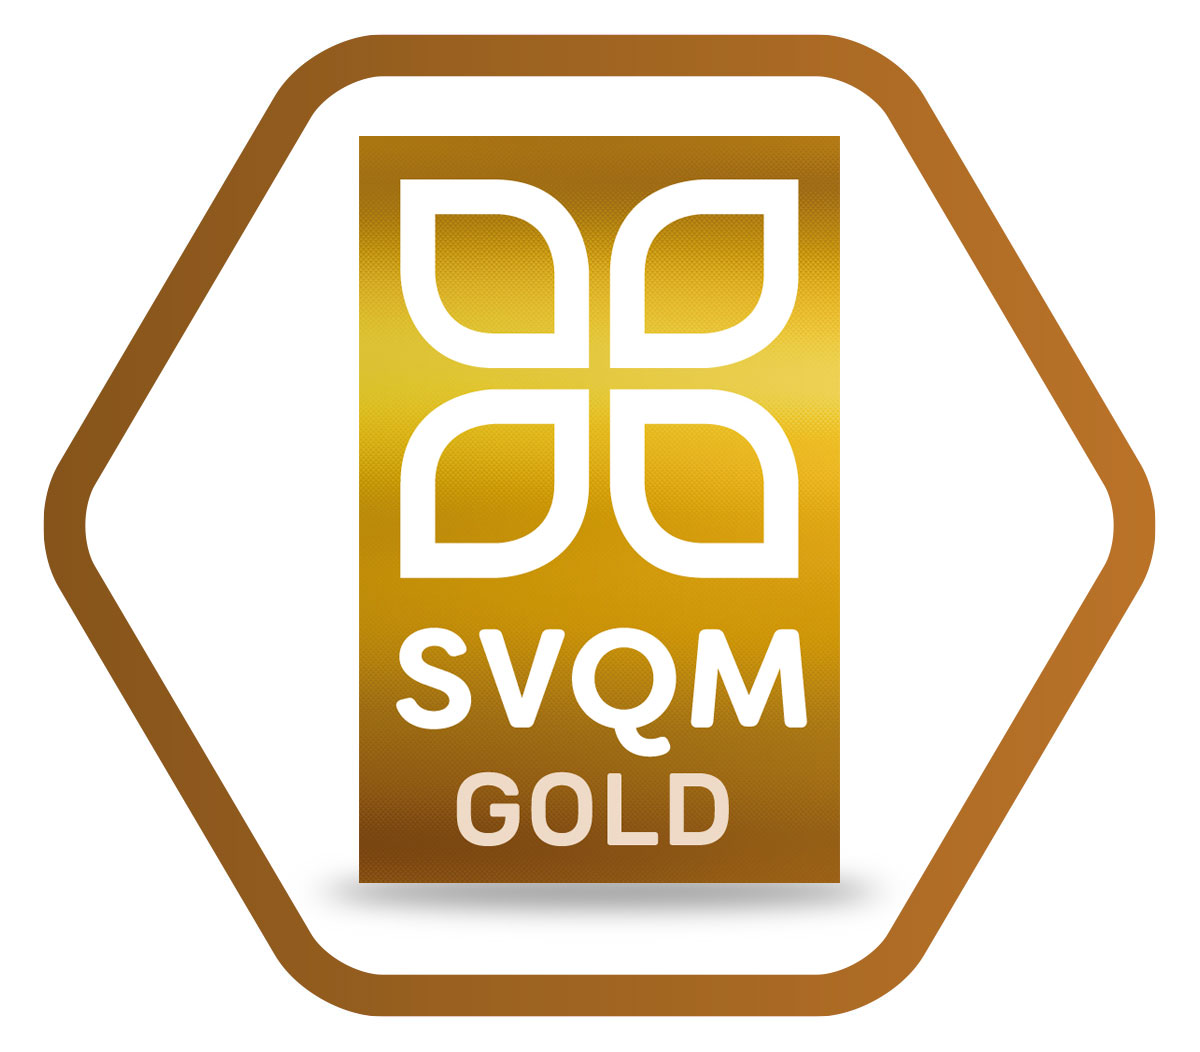 SVQM Gold